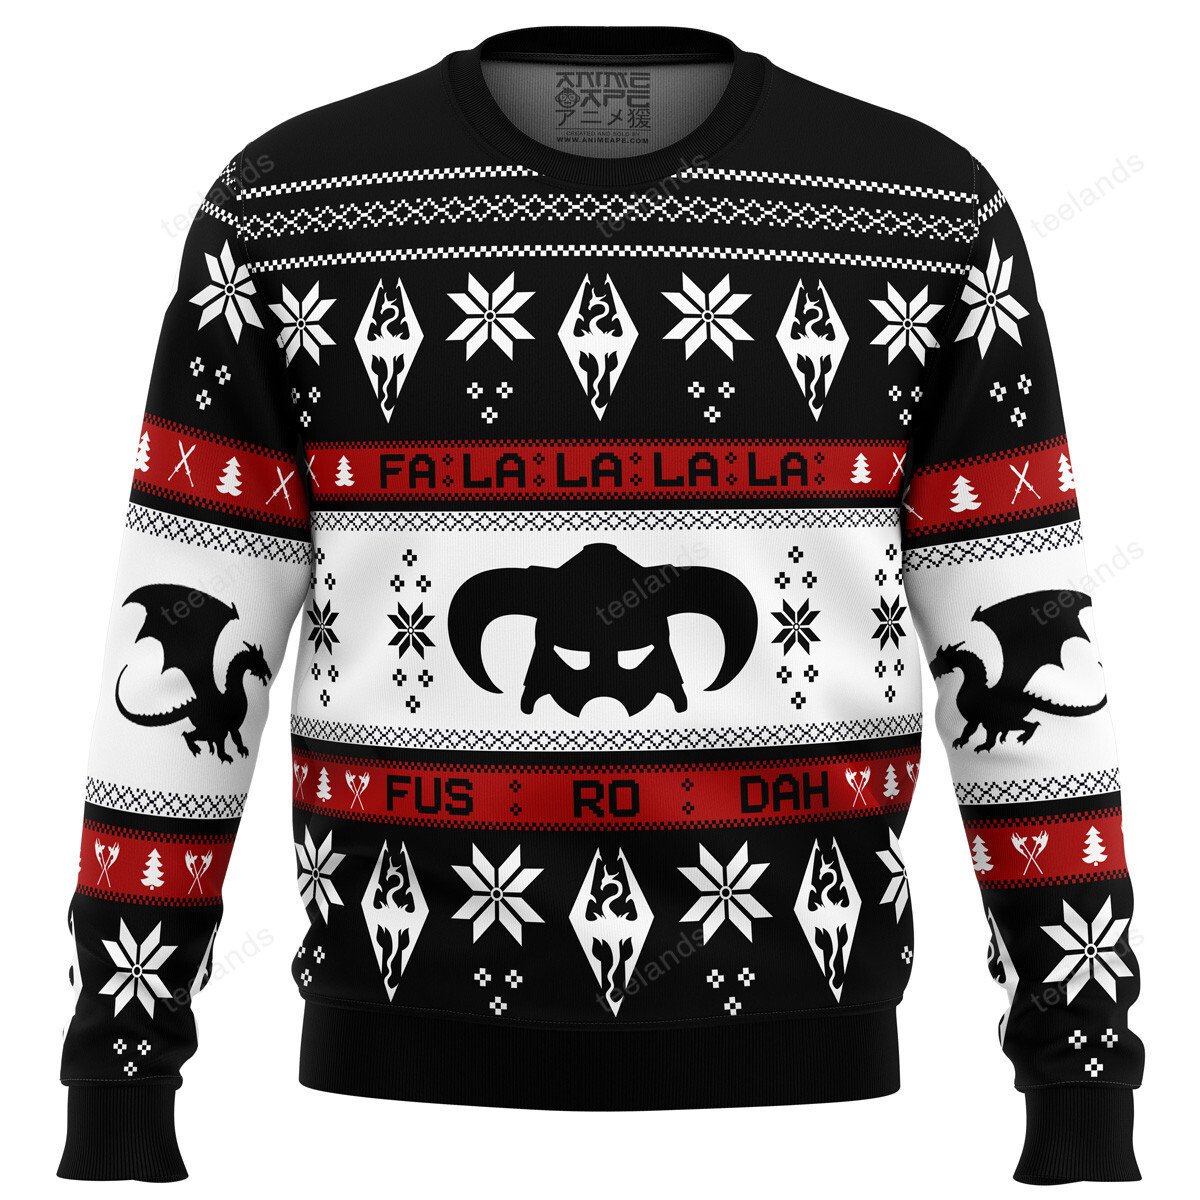 Skyrim fusrodah Christmas sweater - Endastore.com